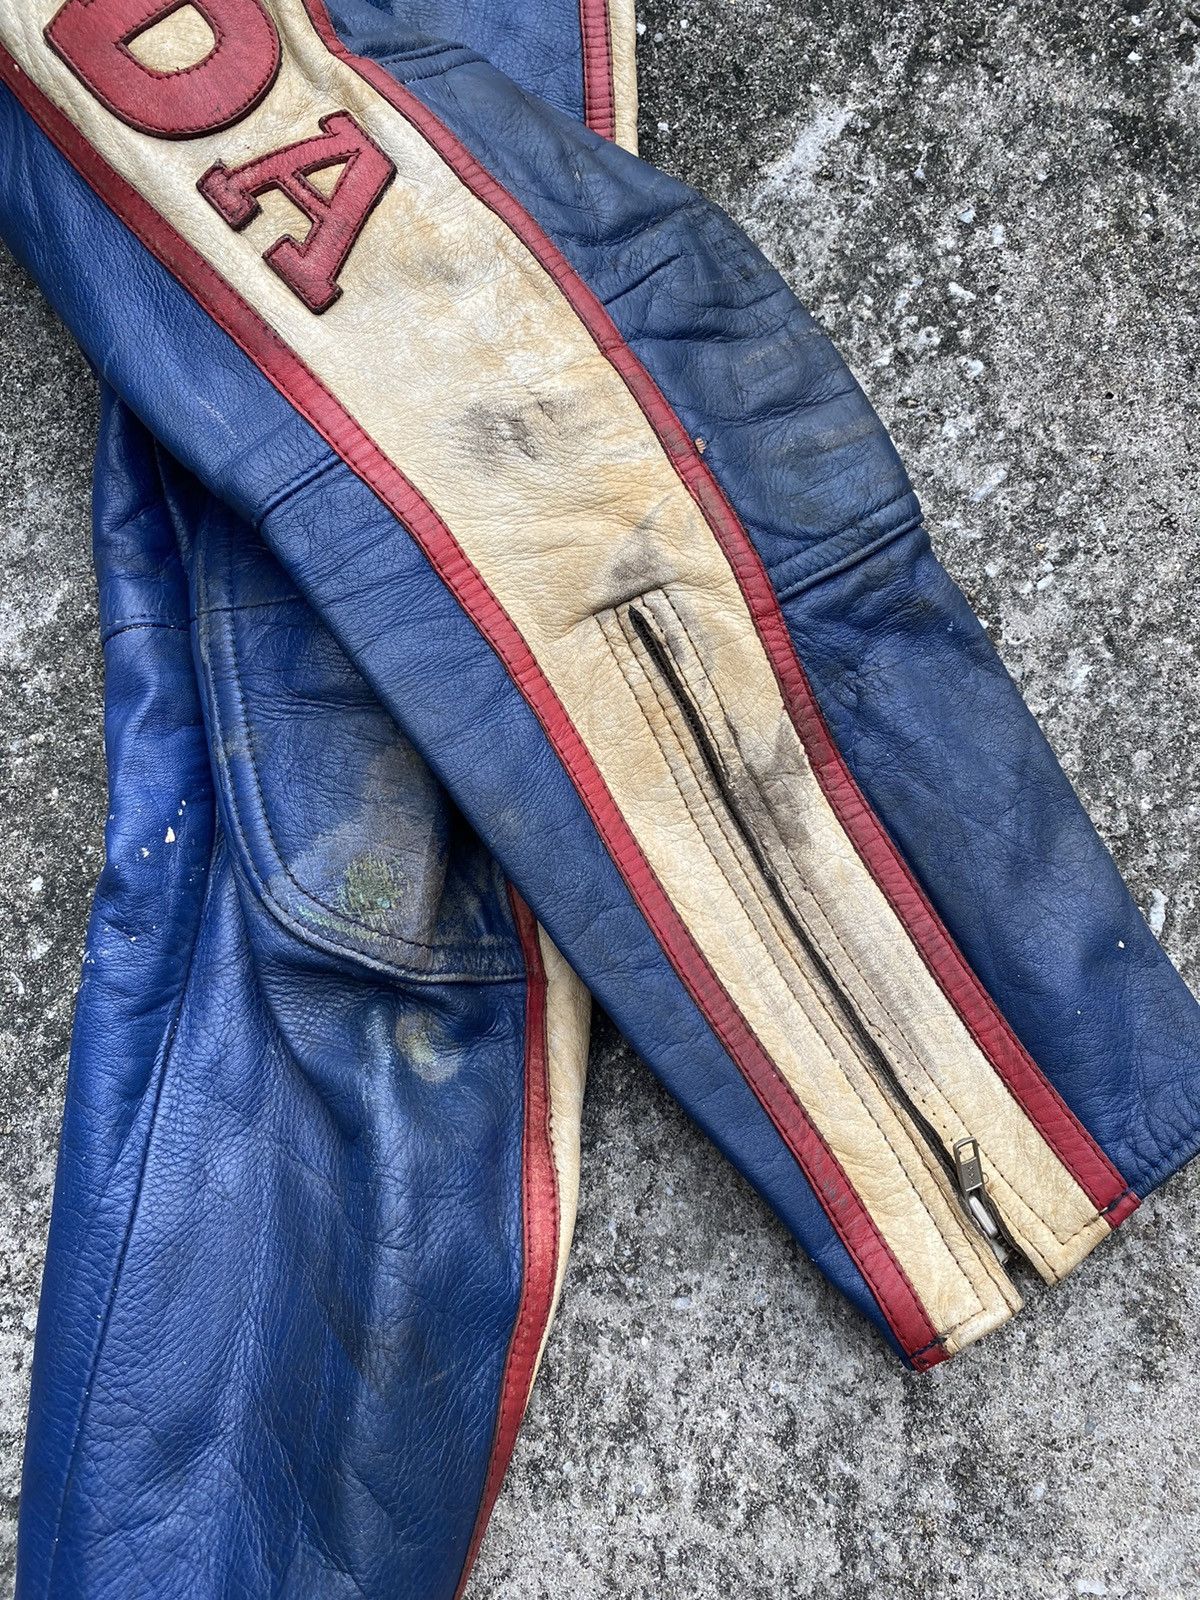 Vintage Honda Racing Leather Pant Motorcycle - 4